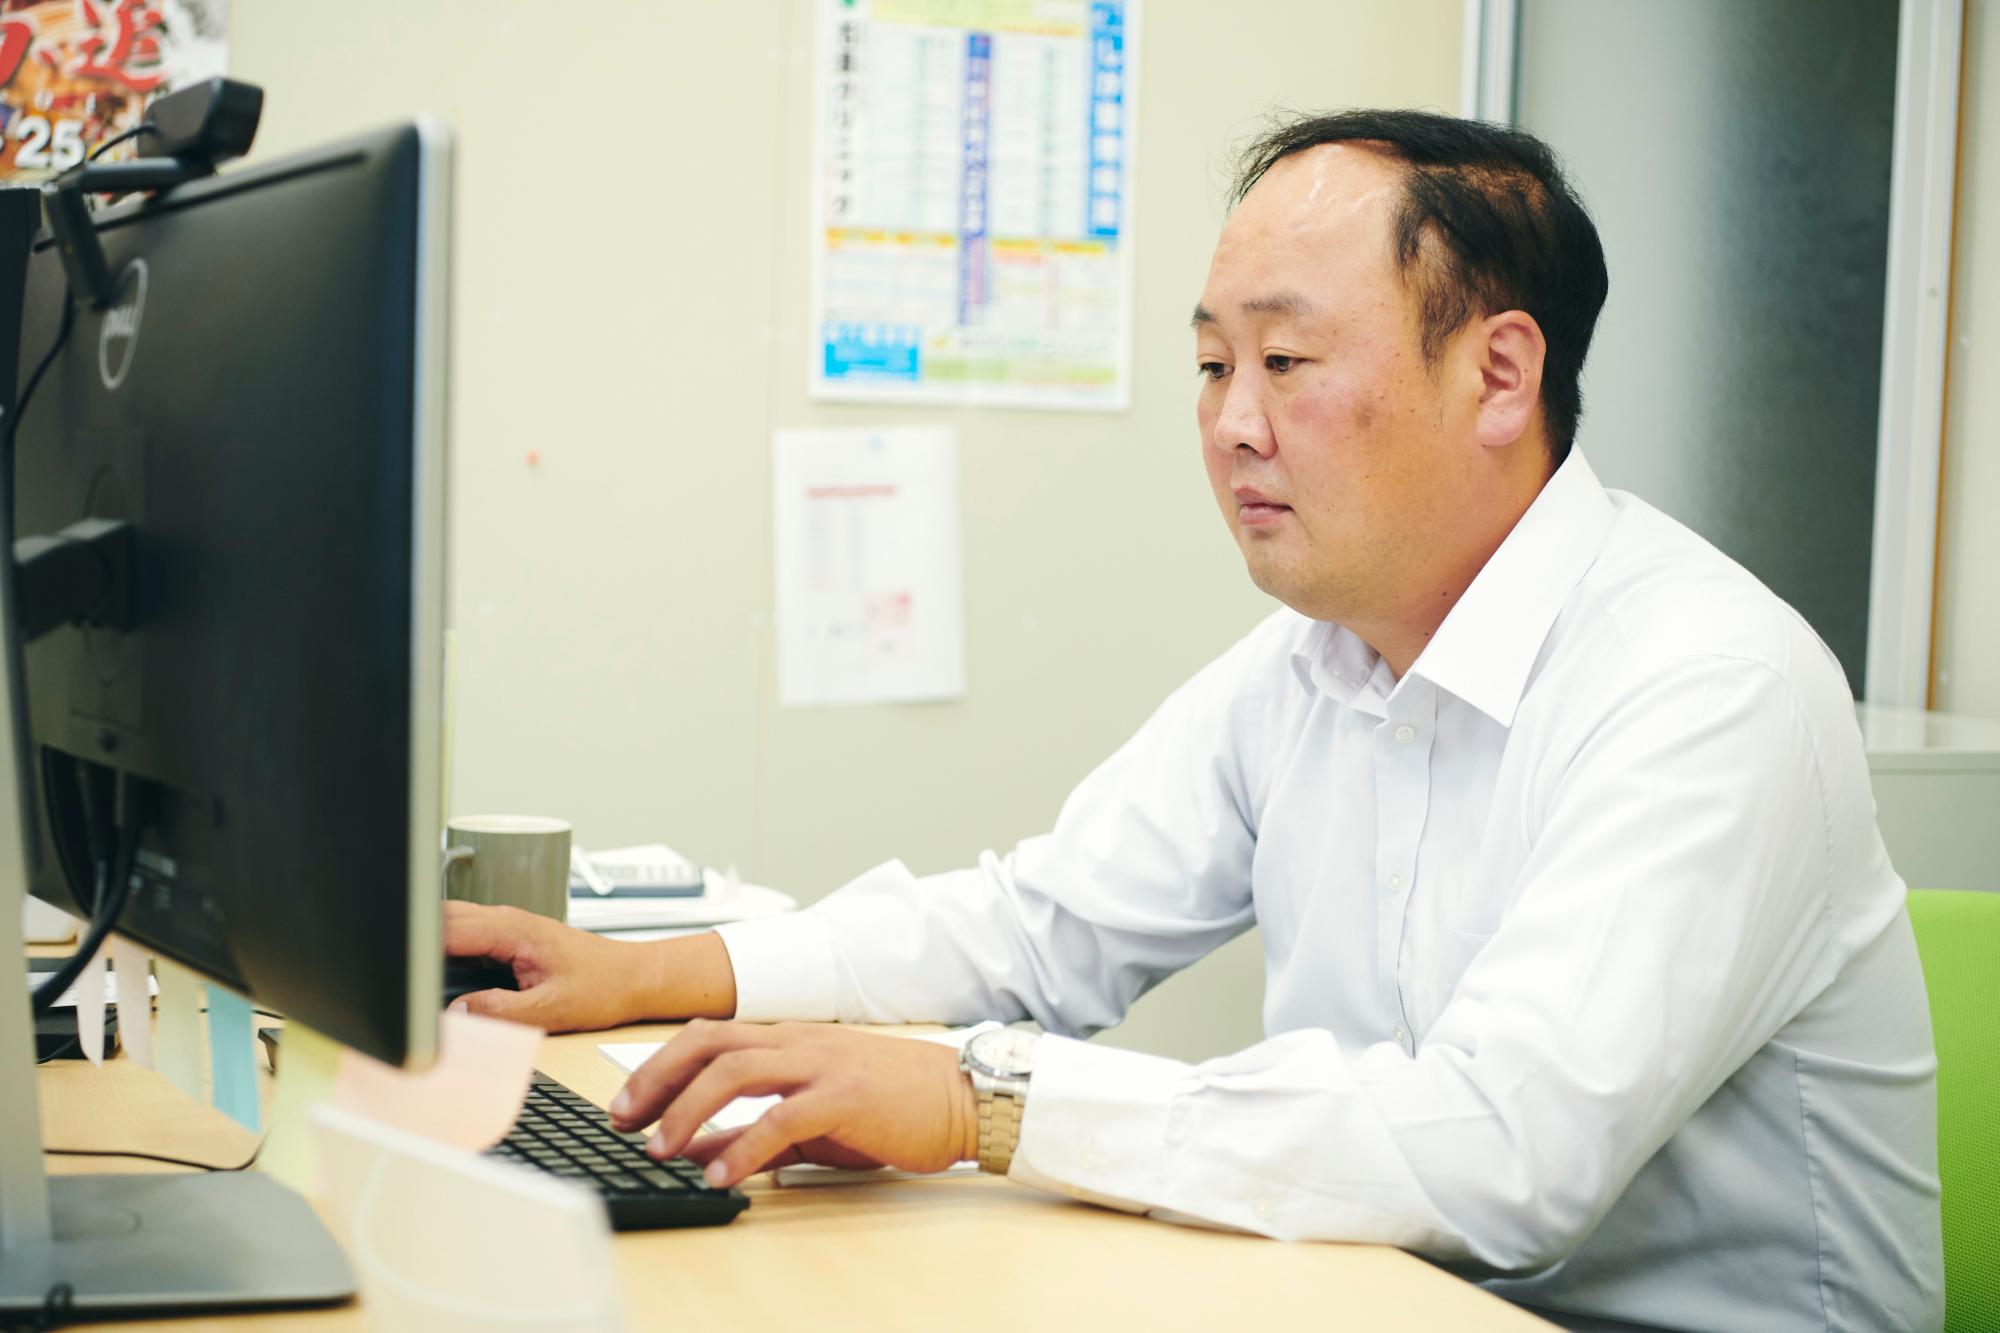 設計からプロジェクト管理、営業まで幅広い仕事を行う上村さん